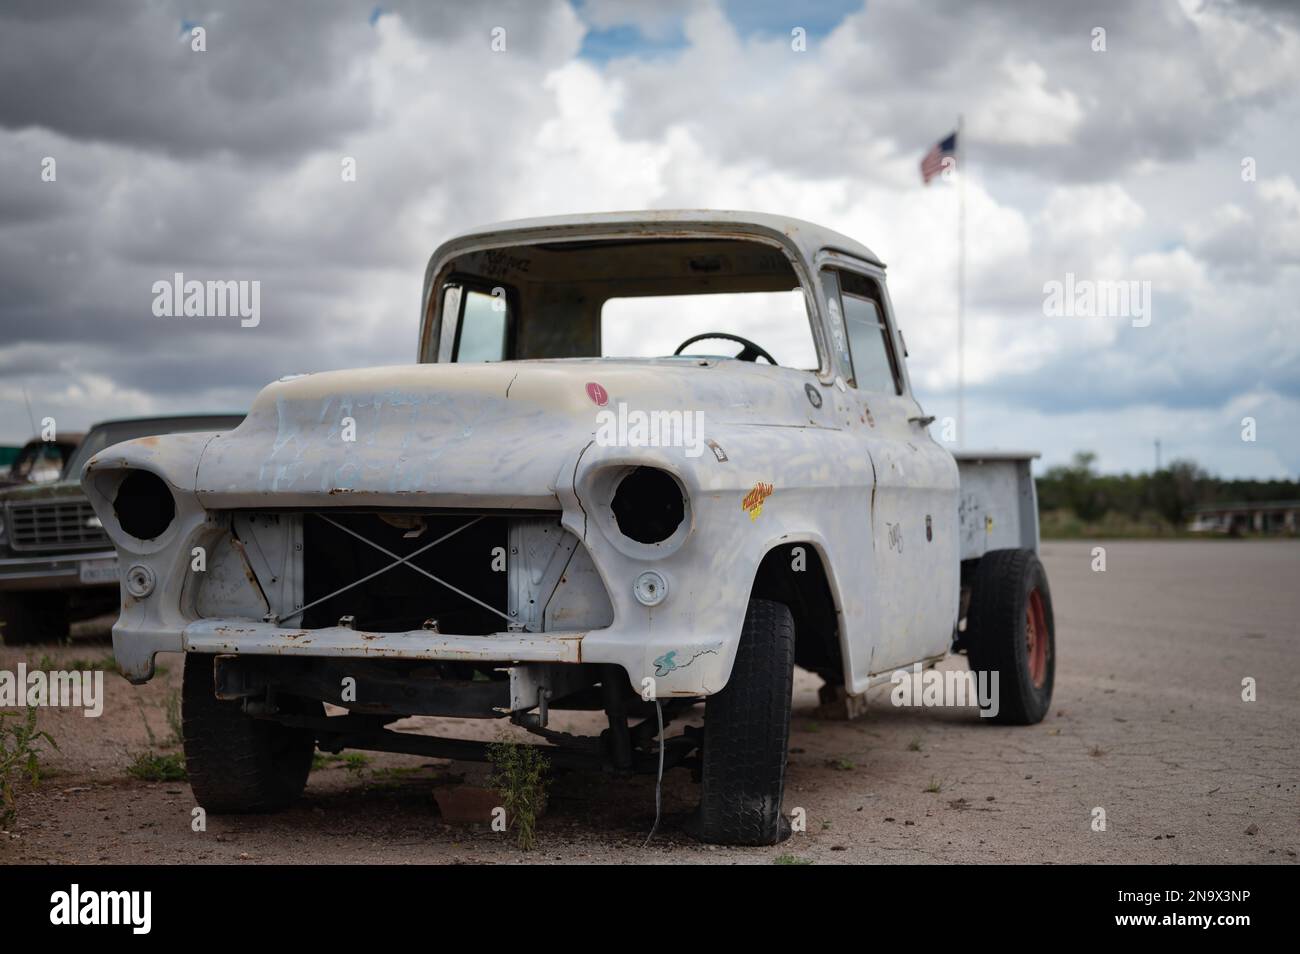 Un vieux pick-up blanc abandonné, le groupe de travail de Chevrolet Banque D'Images